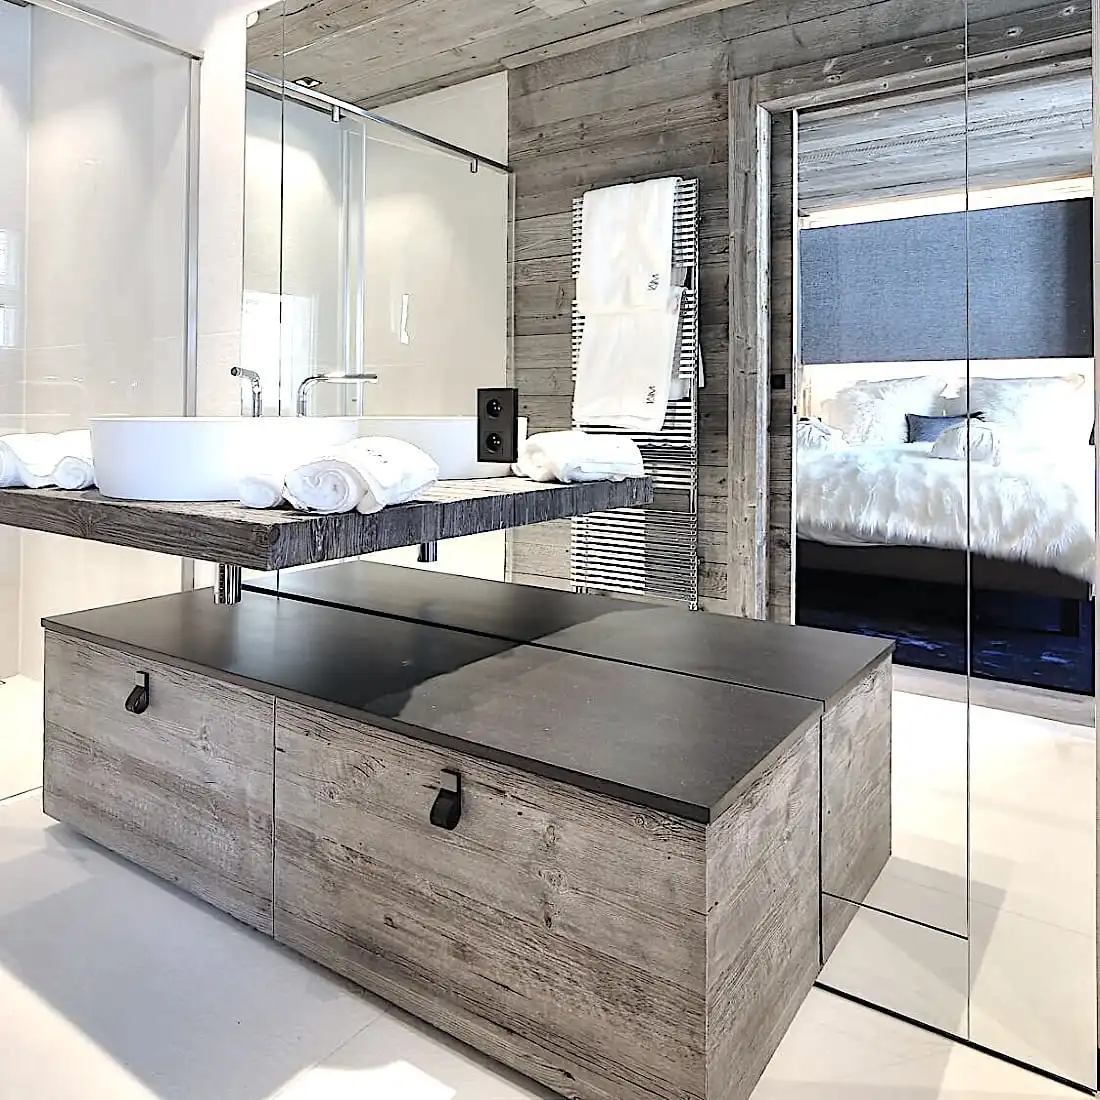  Salle de bain moderne avec vanité rustique en bois faite de panneau 3 plis vieux bois, double vasque, grand miroir et vue sur une chambre attenante avec un lit moelleux. 